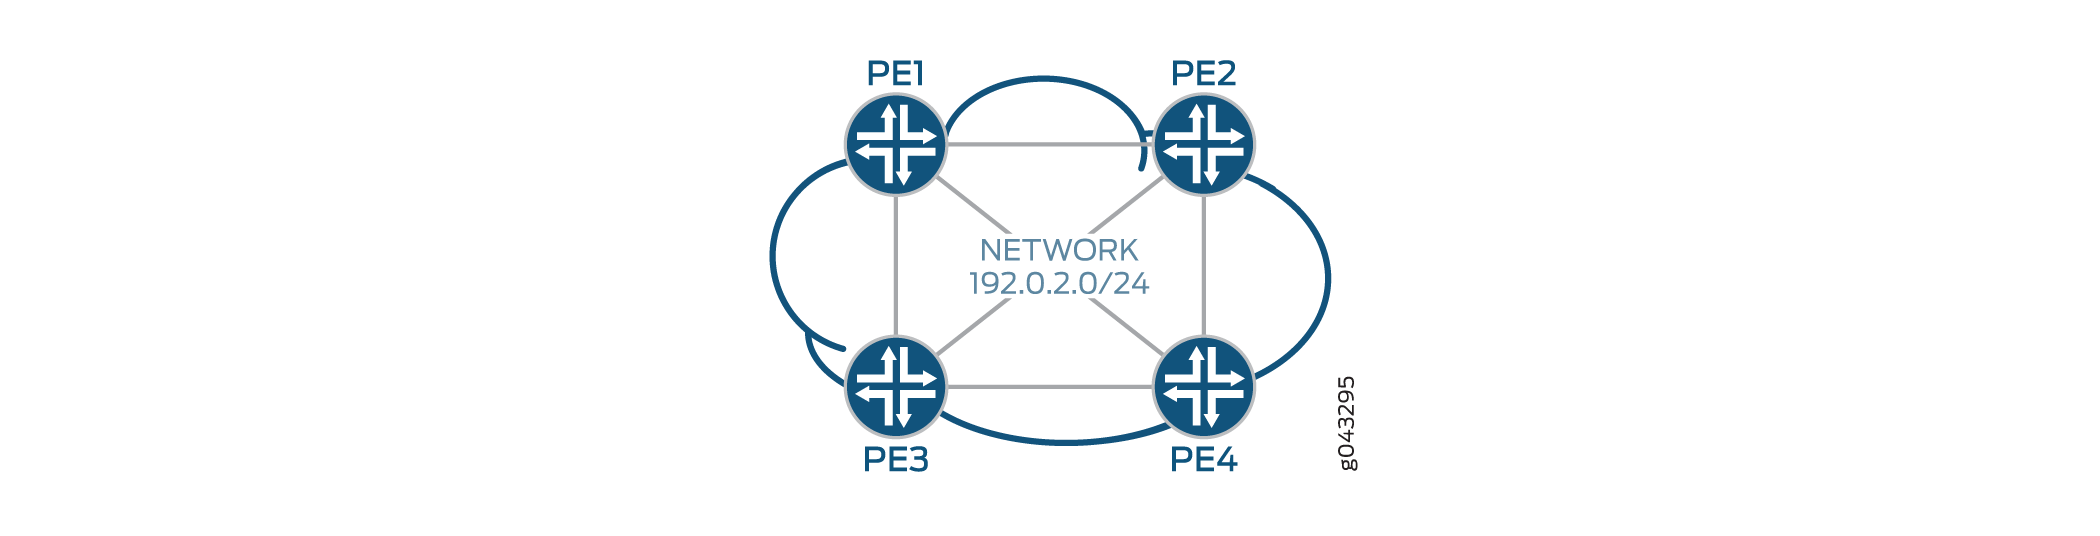 采用 PE 路由器的服务提供商网络